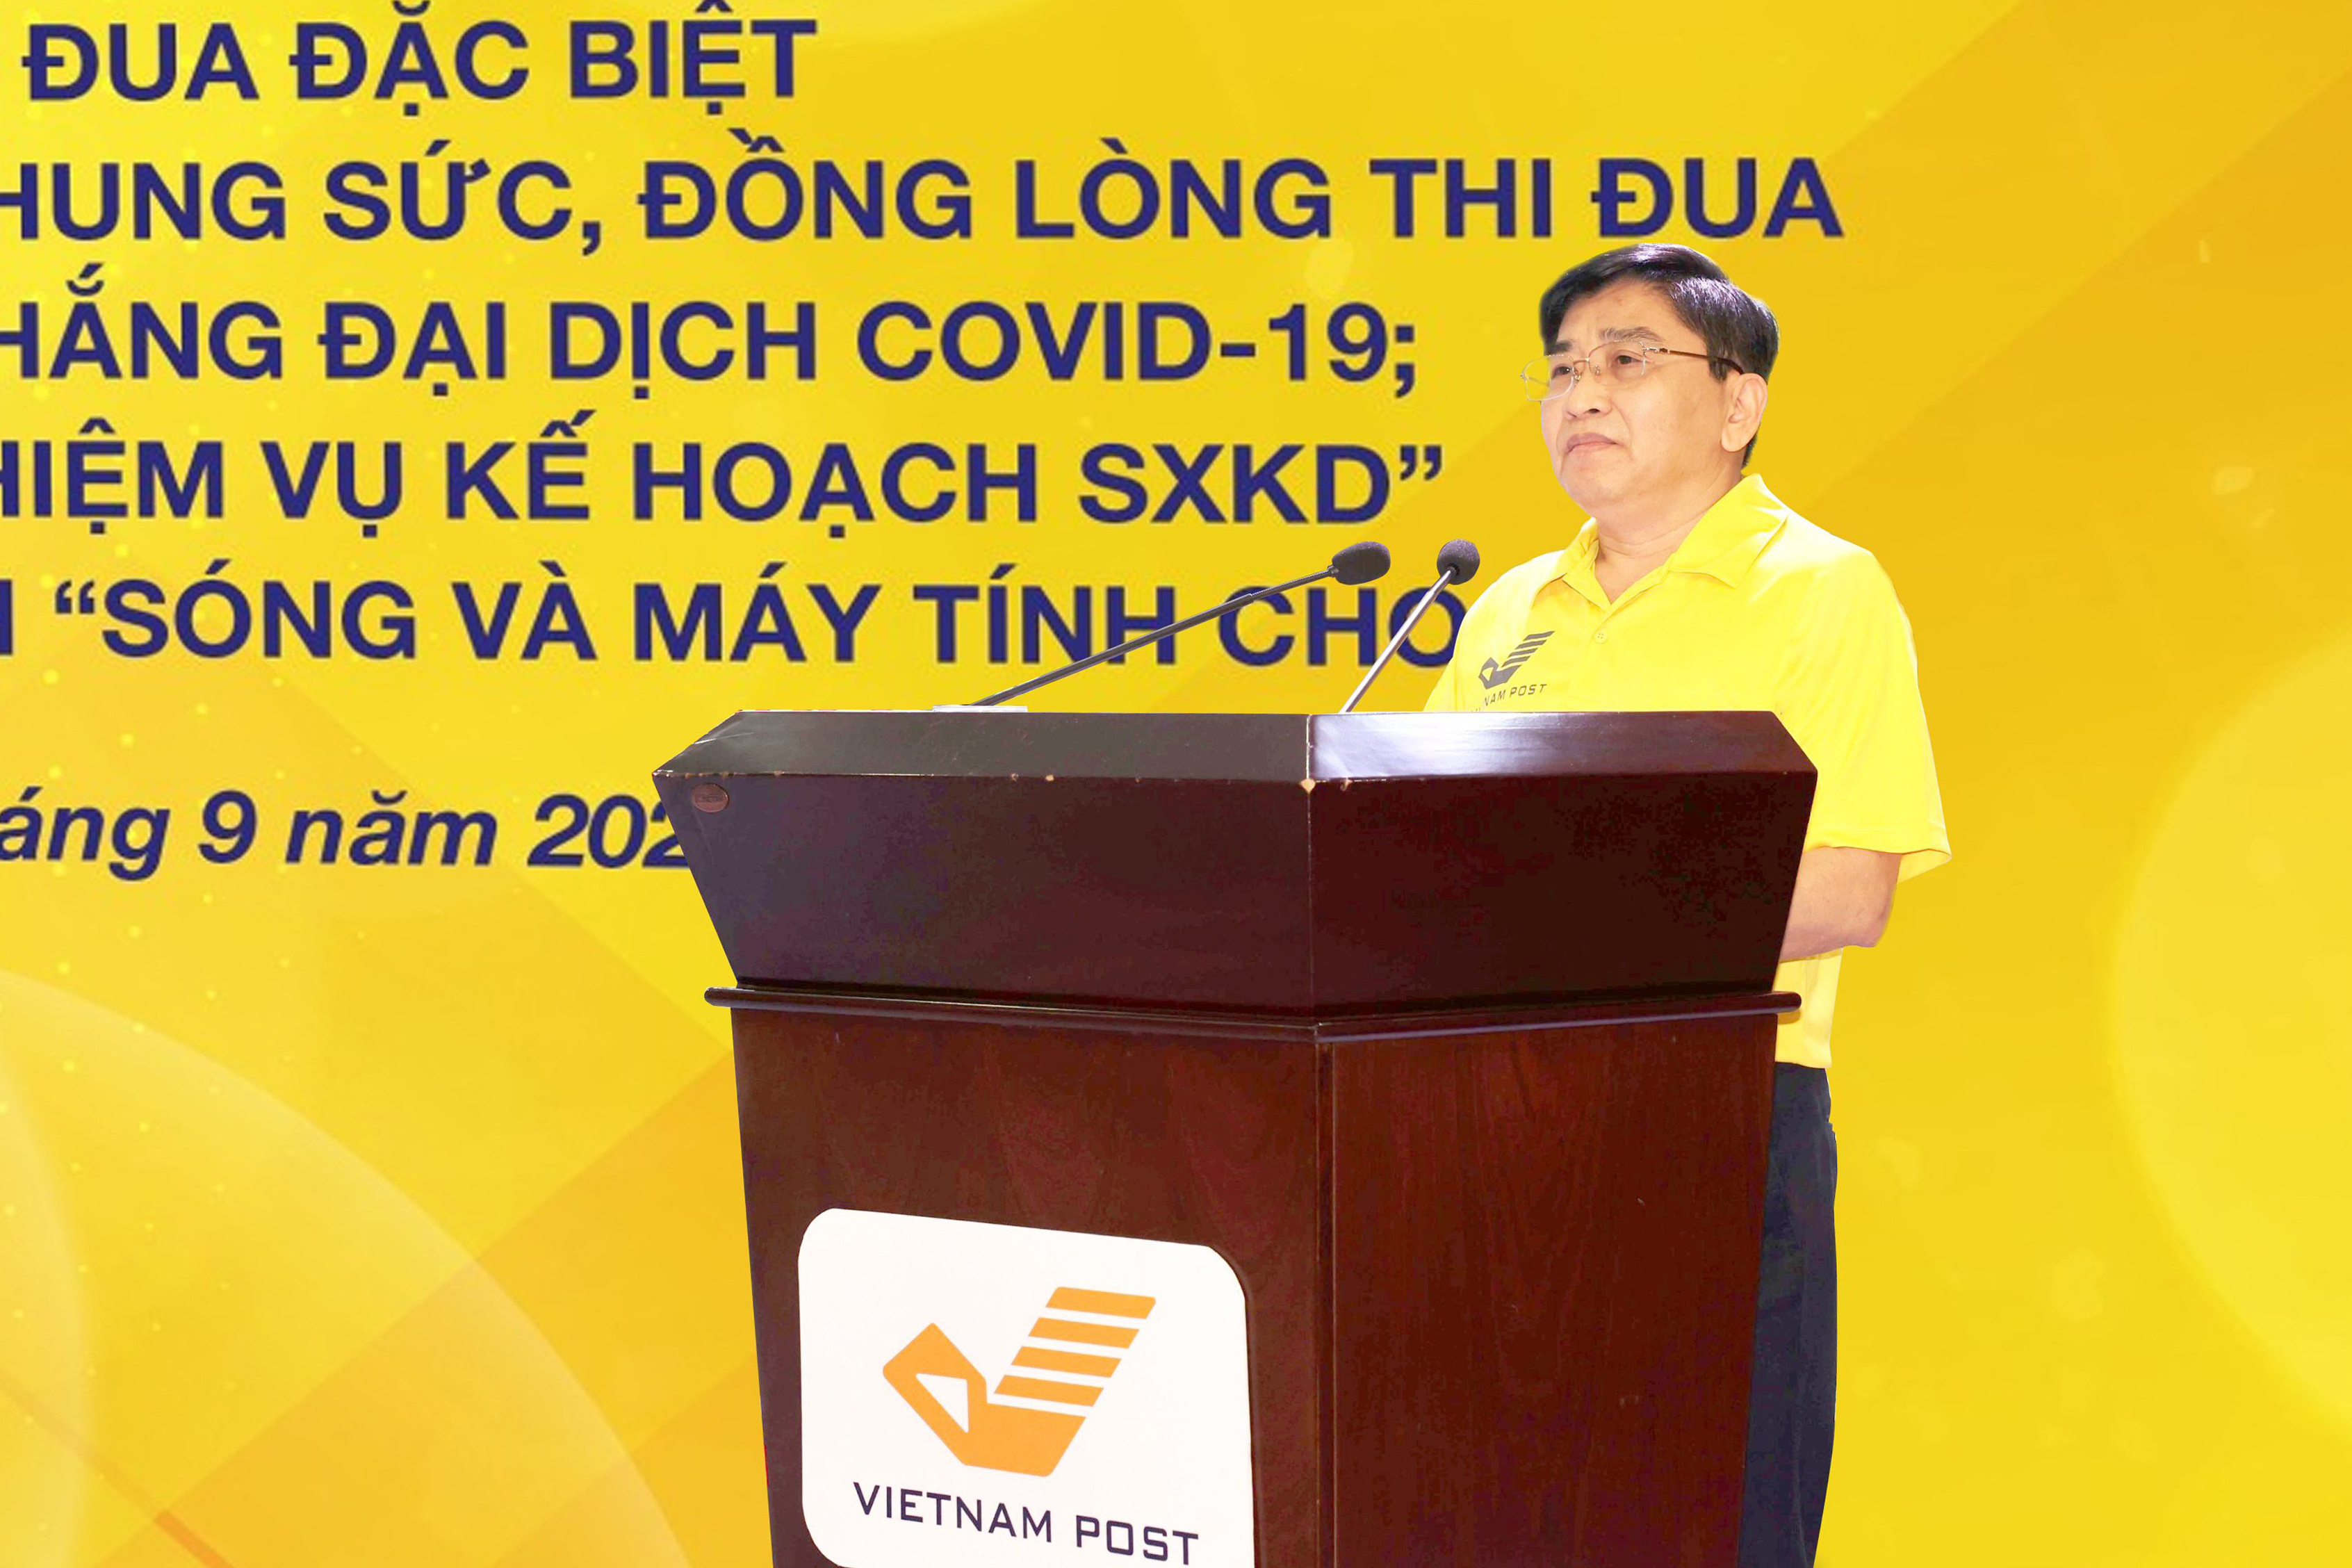 Ông Nguyễn Hải Thanh, Chủ tịch Hội đồng thành viên Tổng công ty Bưu điện Việt Nam yêu cầu tập thể đơn vị thực hiện tốt nhiệm vụ chống dịch và sản xuất kinh doanh.